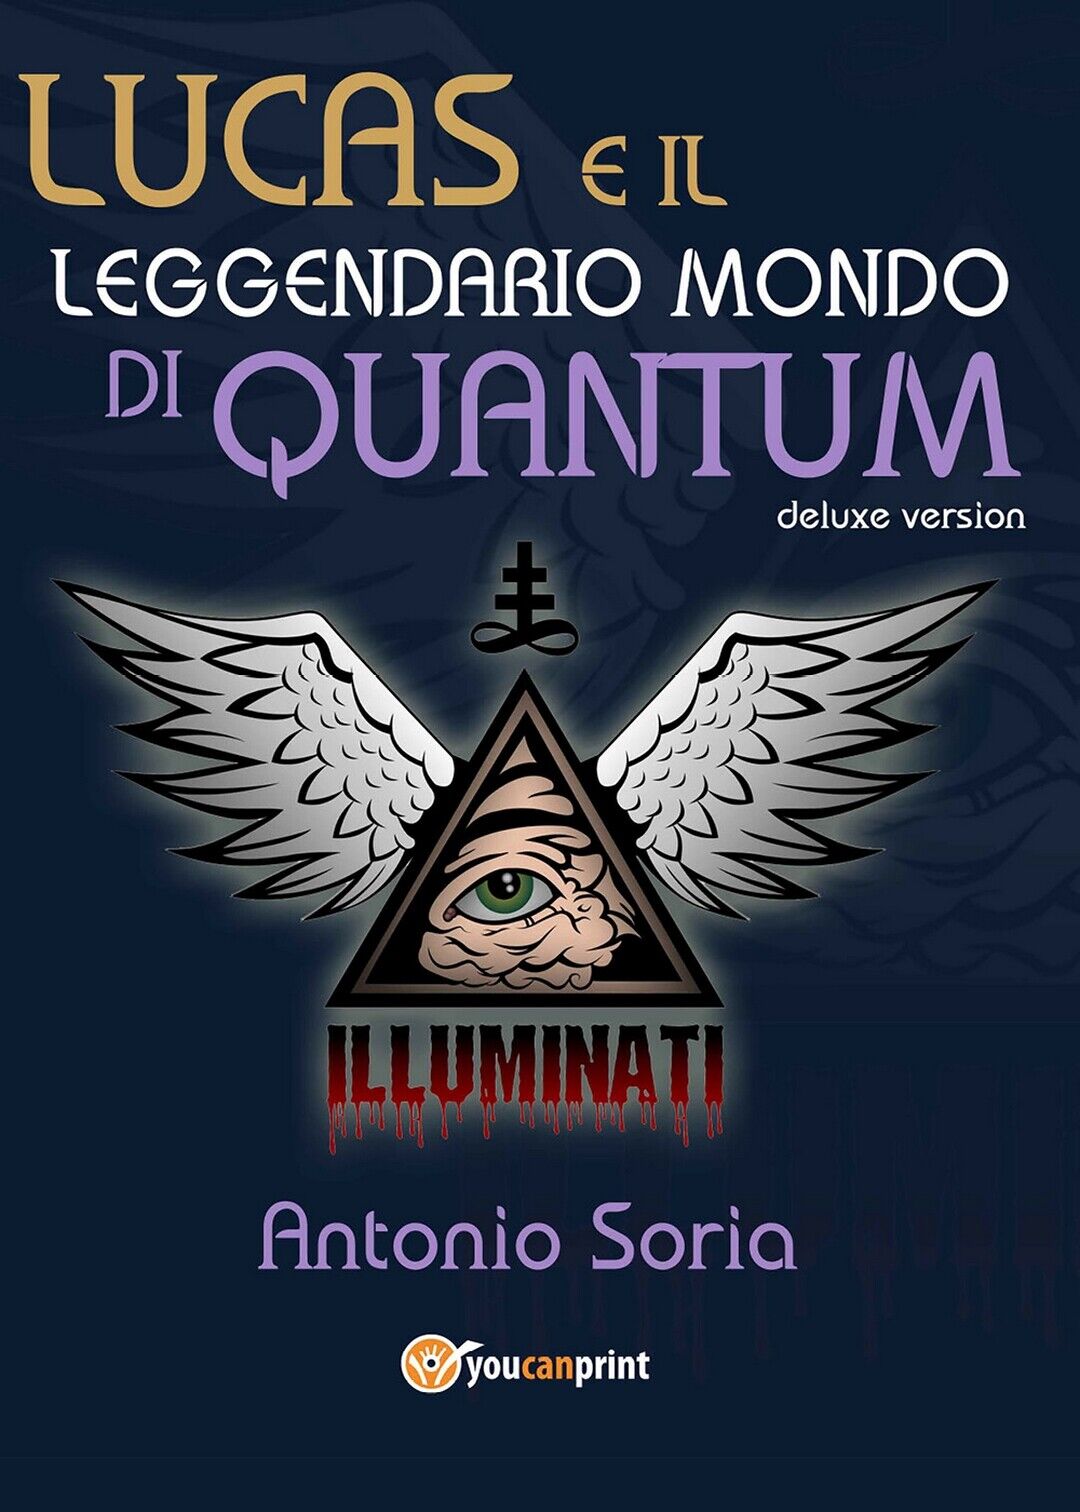 Lucas e il leggendario mondo di Quantum (Deluxe version) Pocket Edition  libro usato